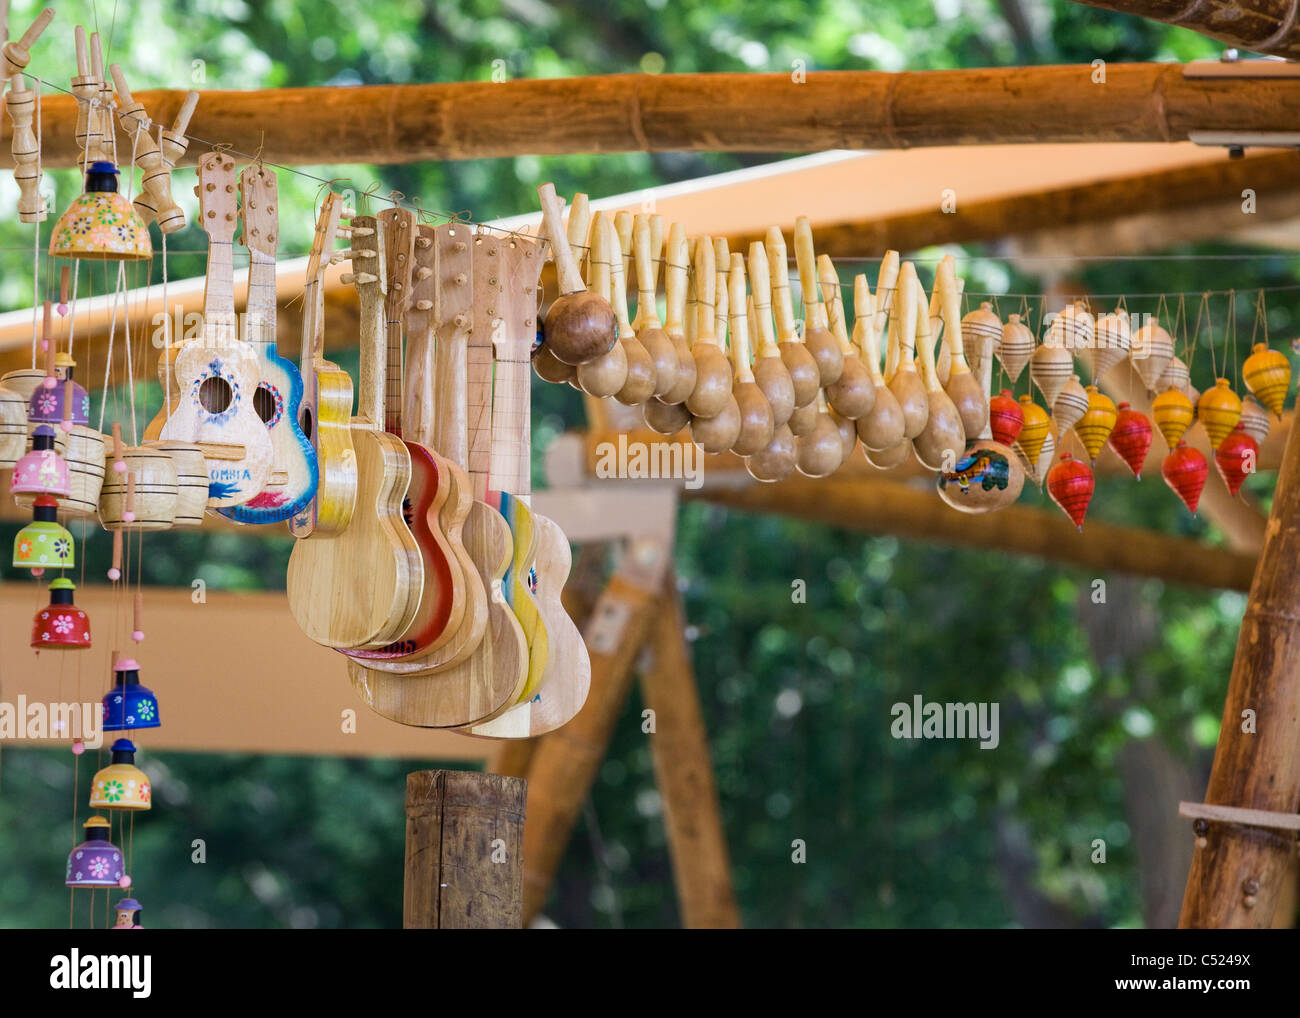 Instrumentos musicales de madera artesanales y juguetes que cuelgan de un cable Foto de stock